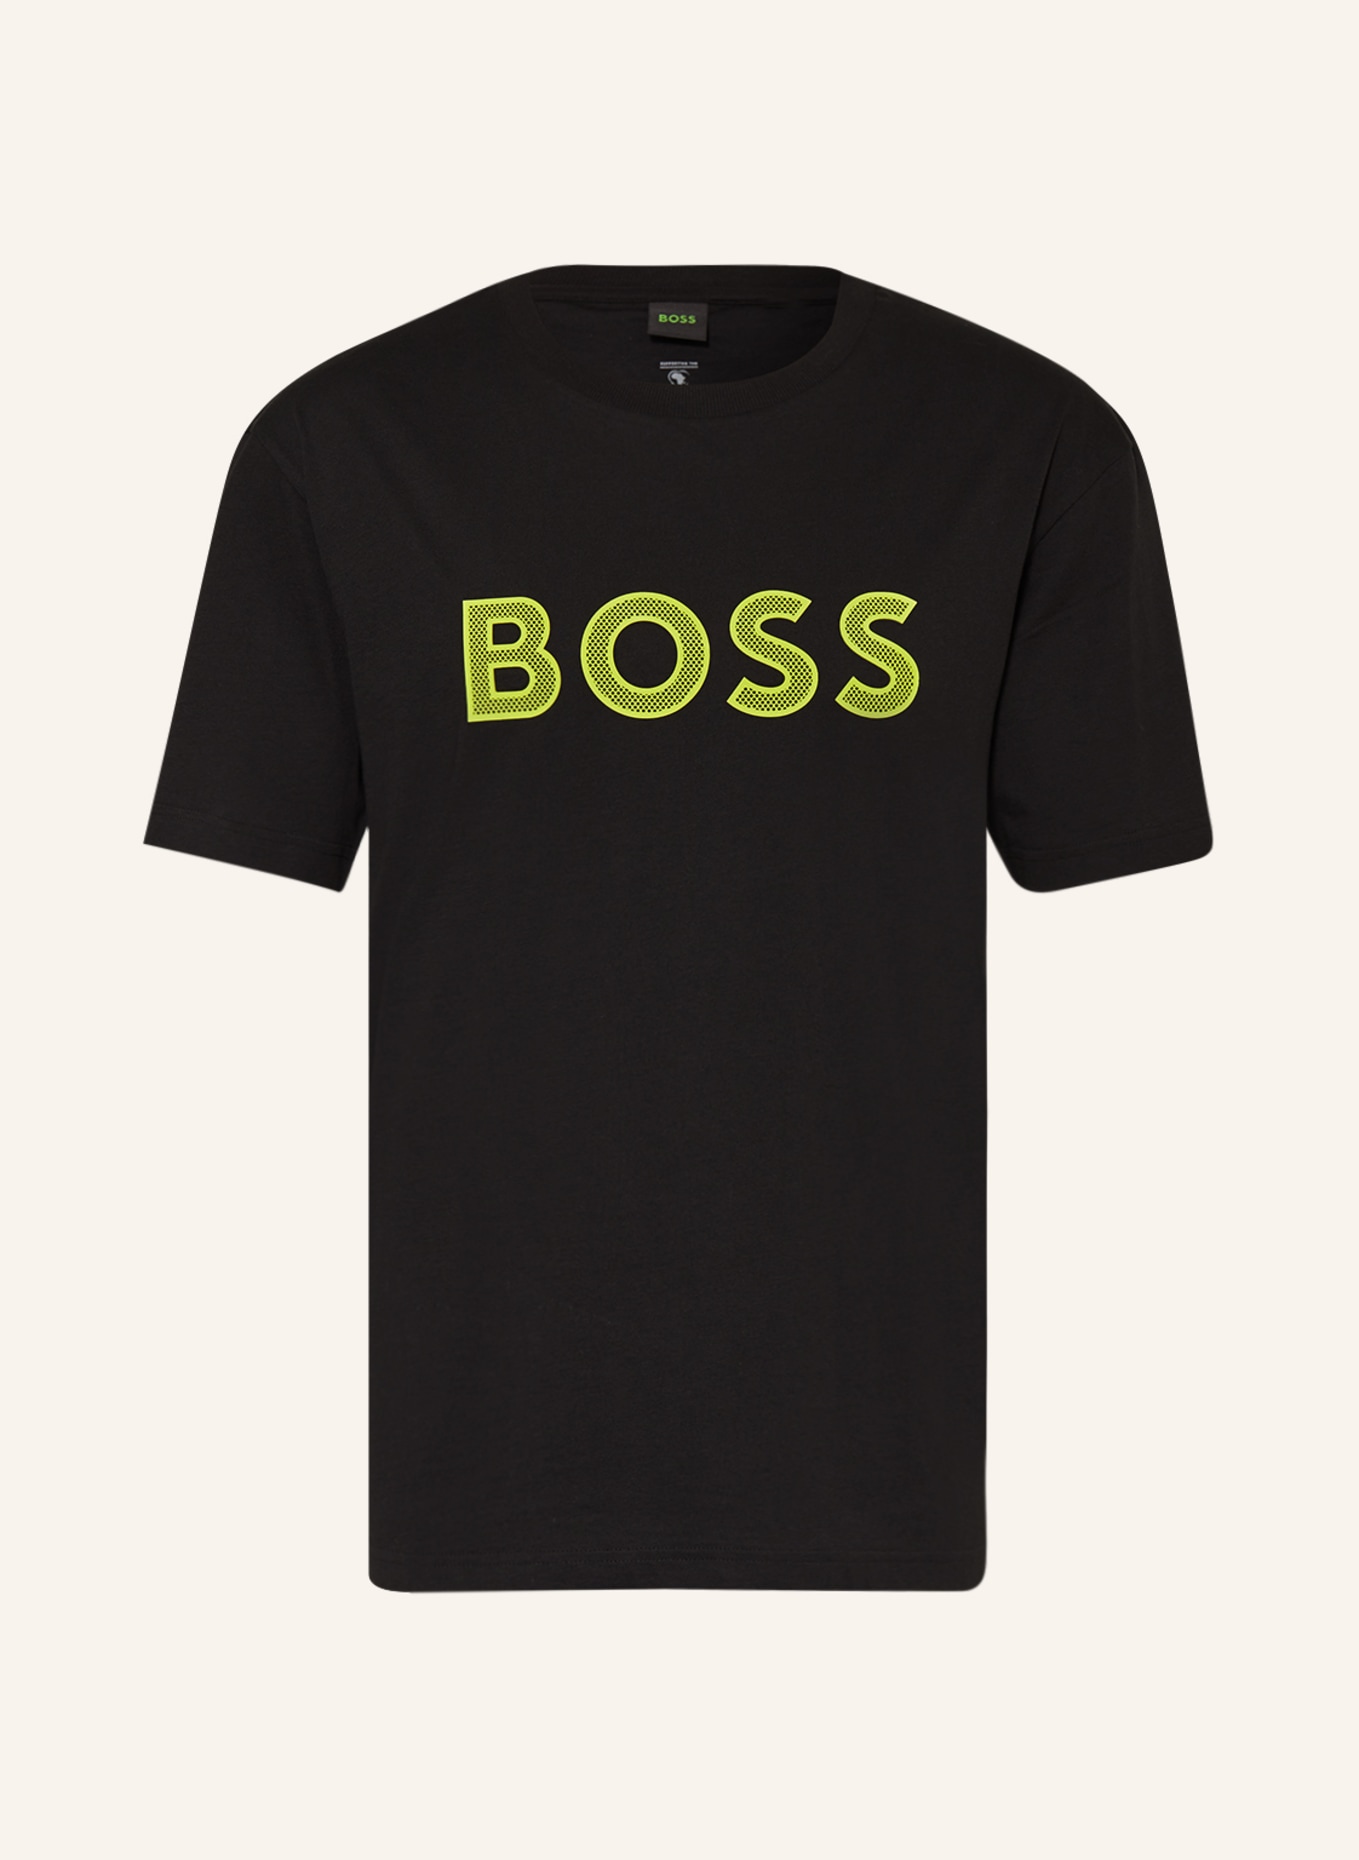 BOSS T-Shirt TEEOS, Farbe: SCHWARZ/ NEONGRÜN (Bild 1)